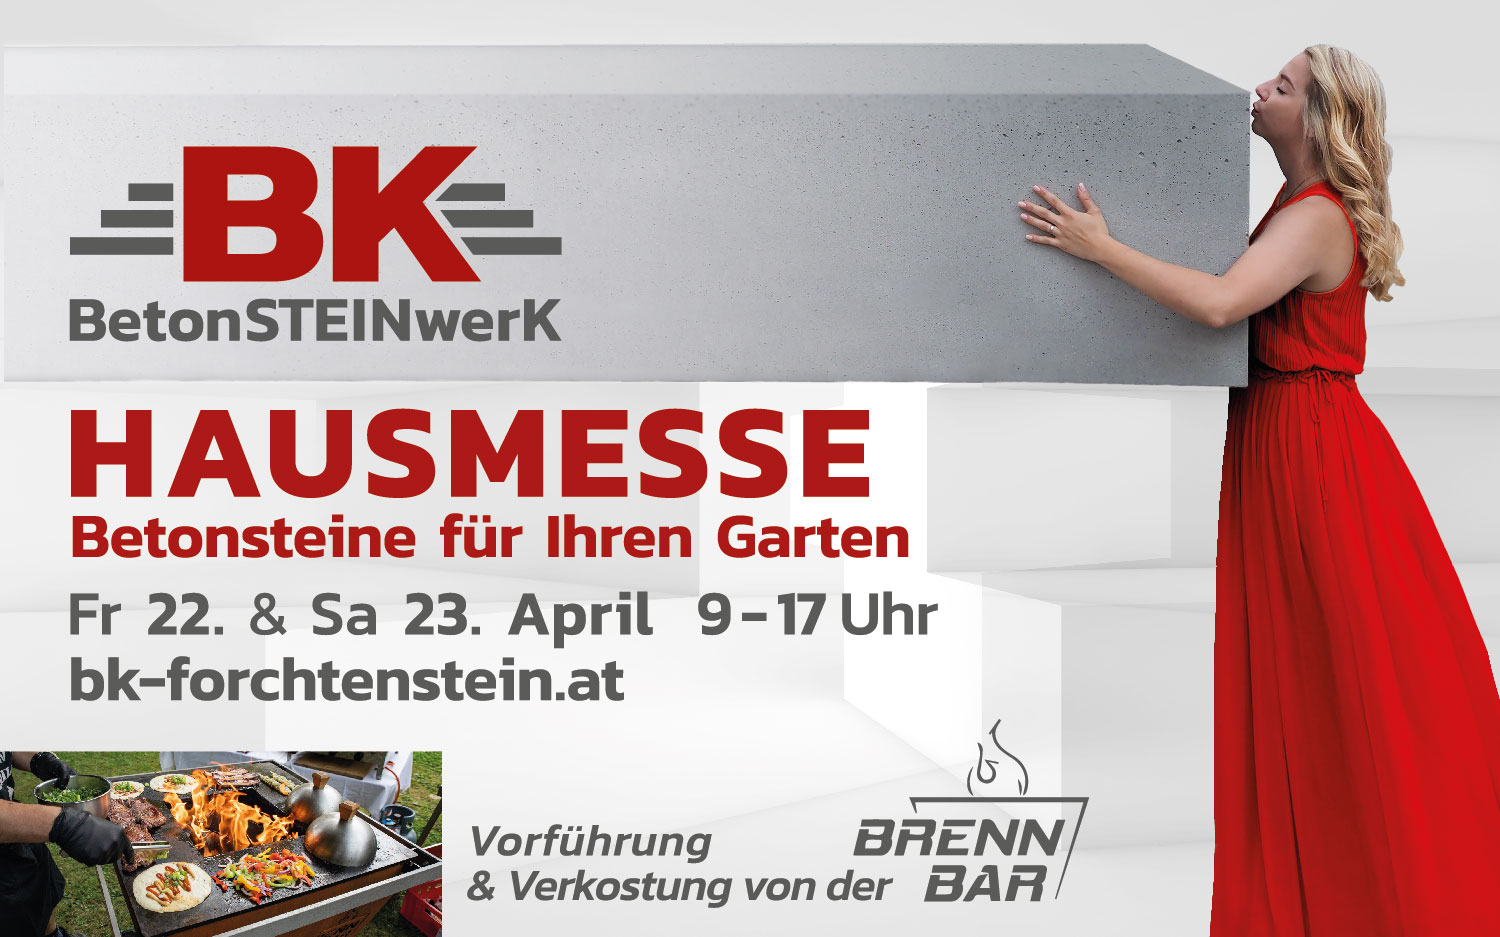 You are currently viewing BRENN-BAR @ Hausmesse Betonsteinwerk Forchtenstein